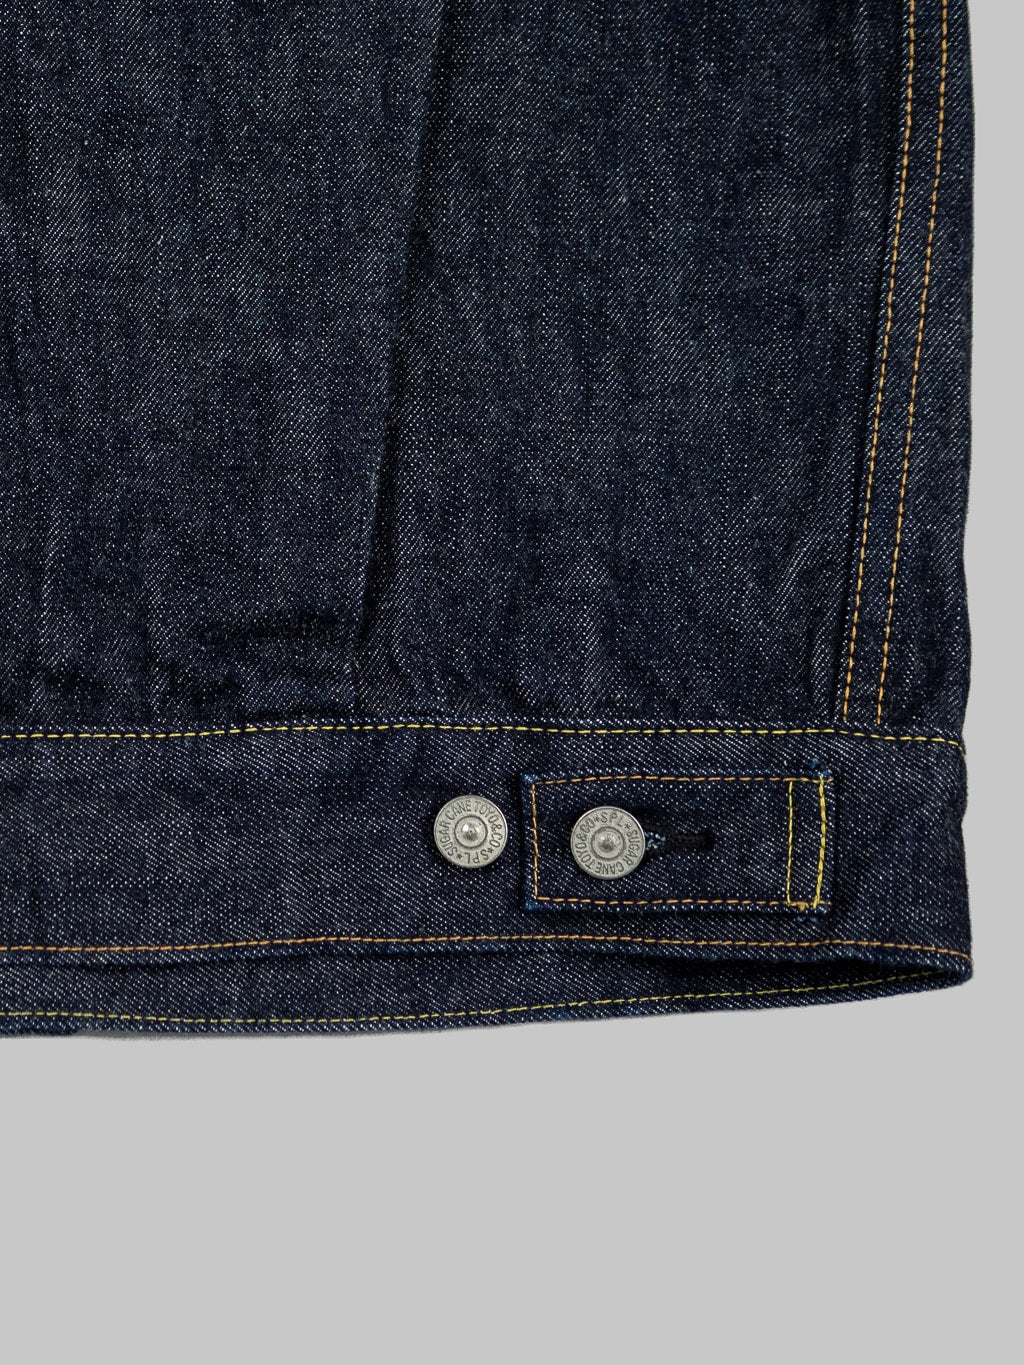 sugar cane 1953 type II denim jacket adjustable waist buttons